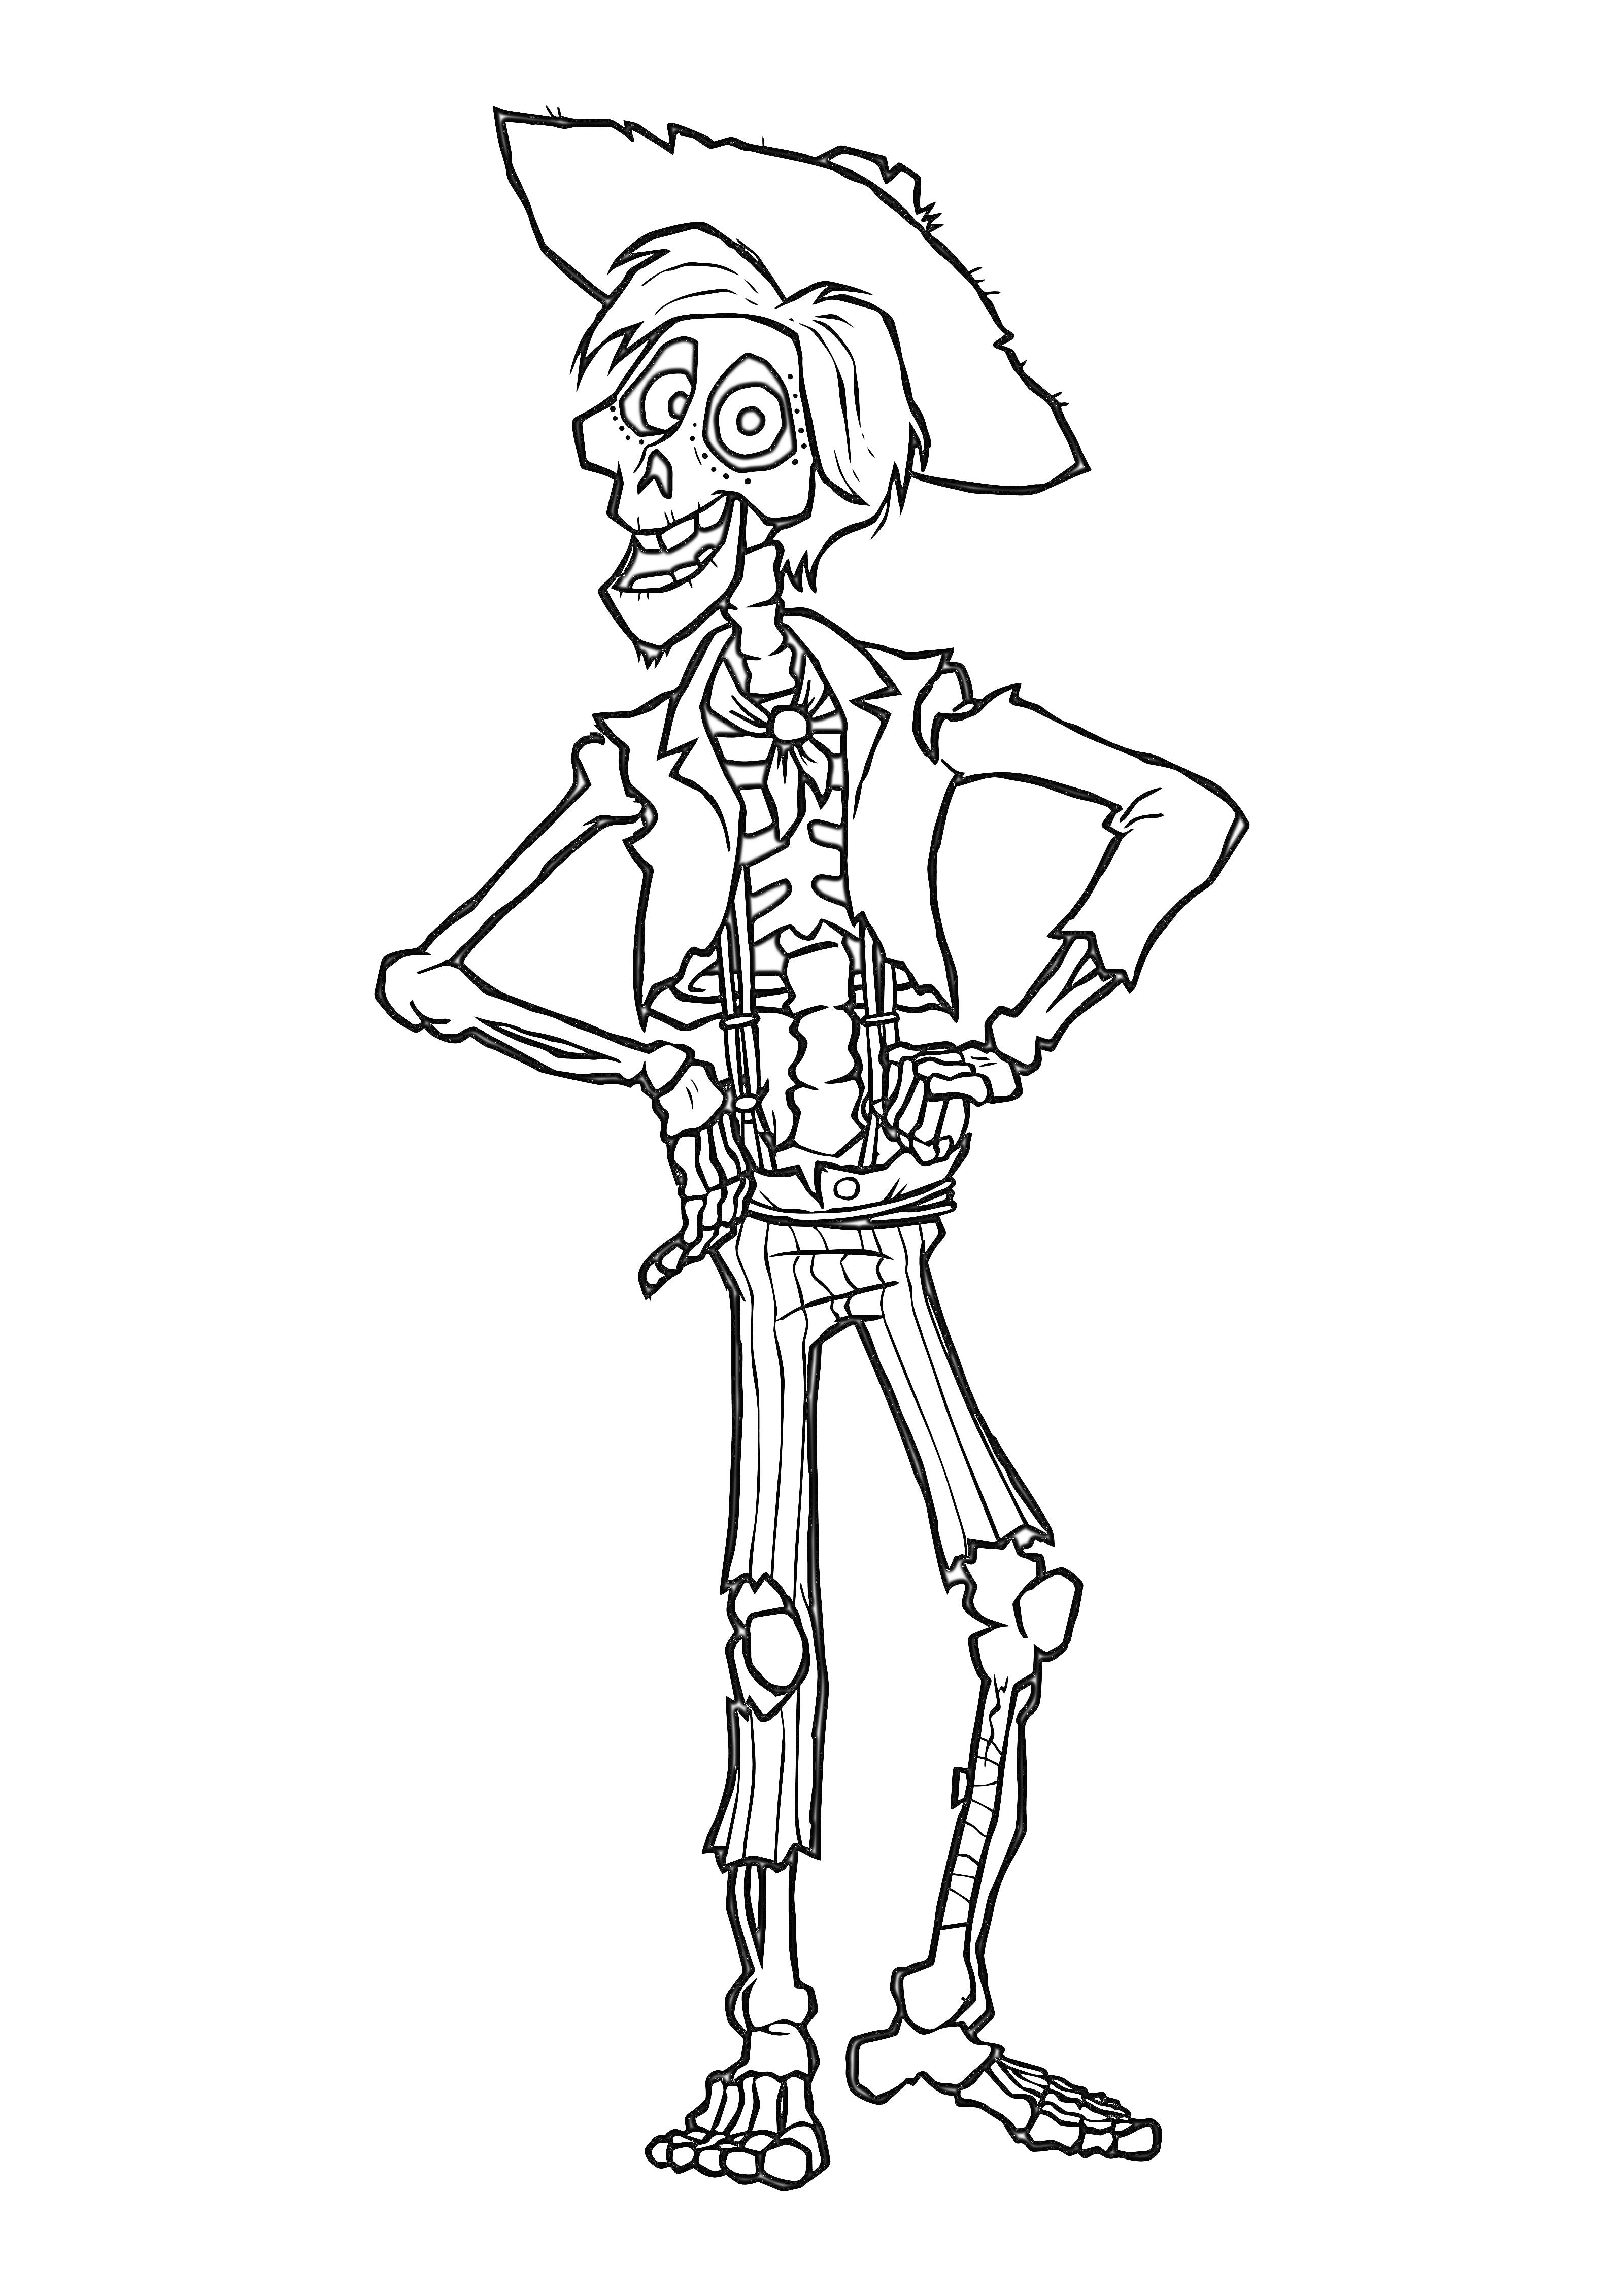 Скелет с шляпой и курткой из Тайна Коко